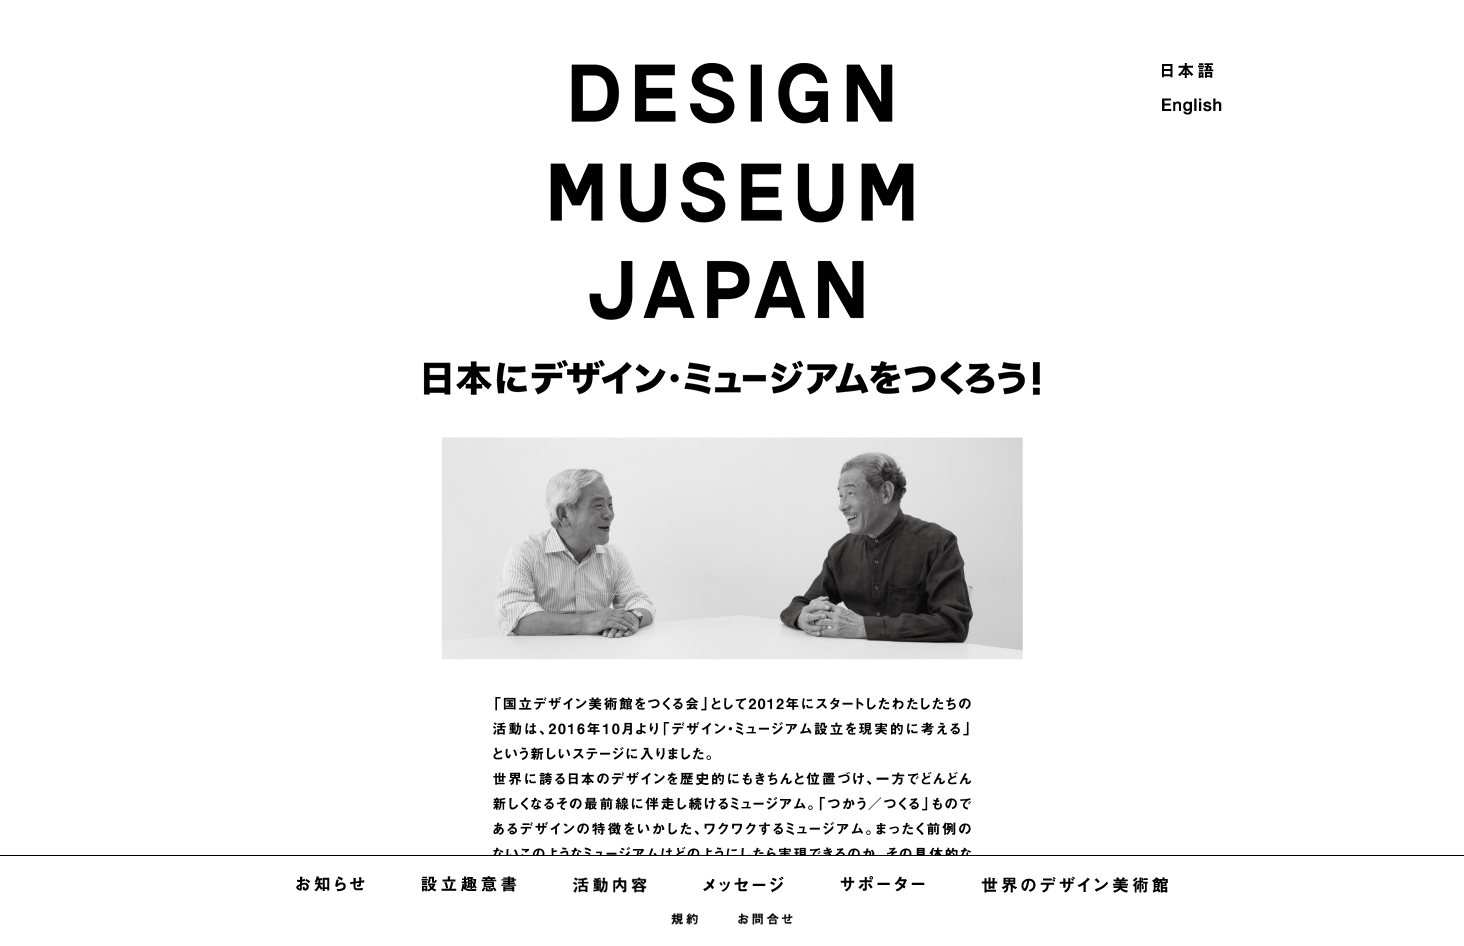 DESIGN MUSEUM JAPAN